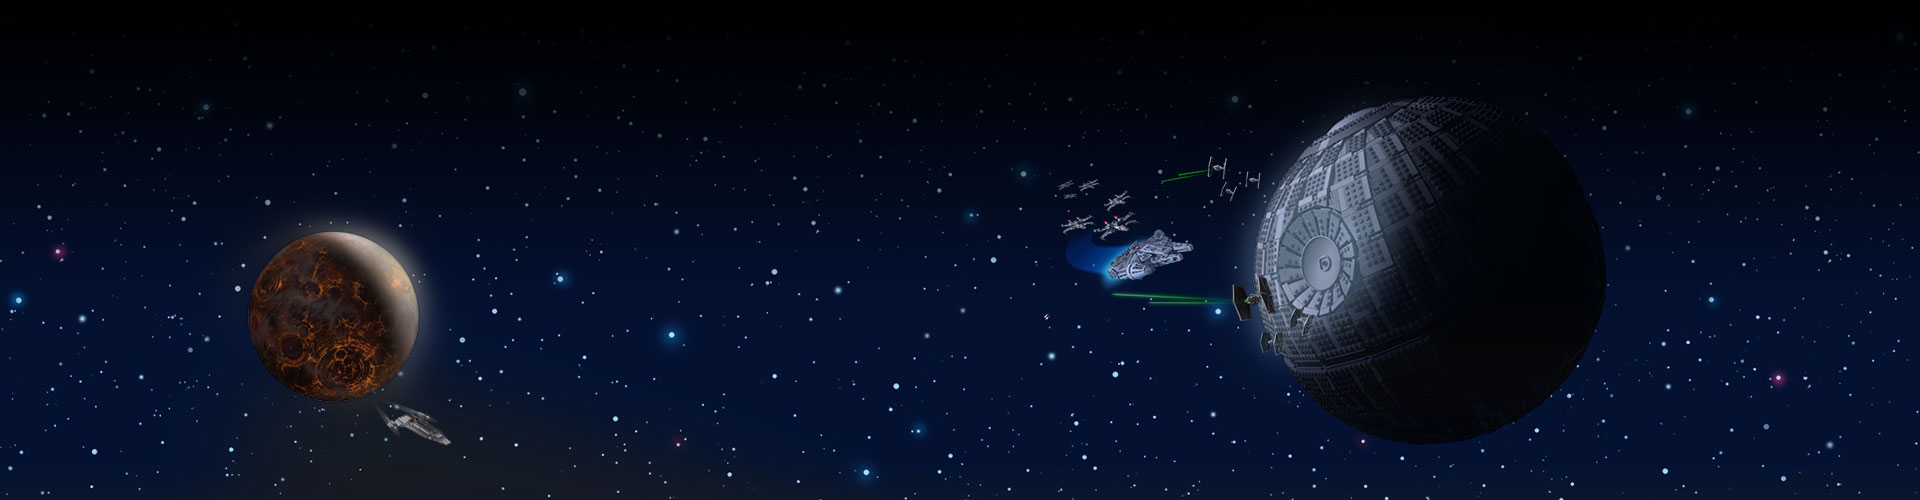 太空中的兩大敵人基地，背景是星空。